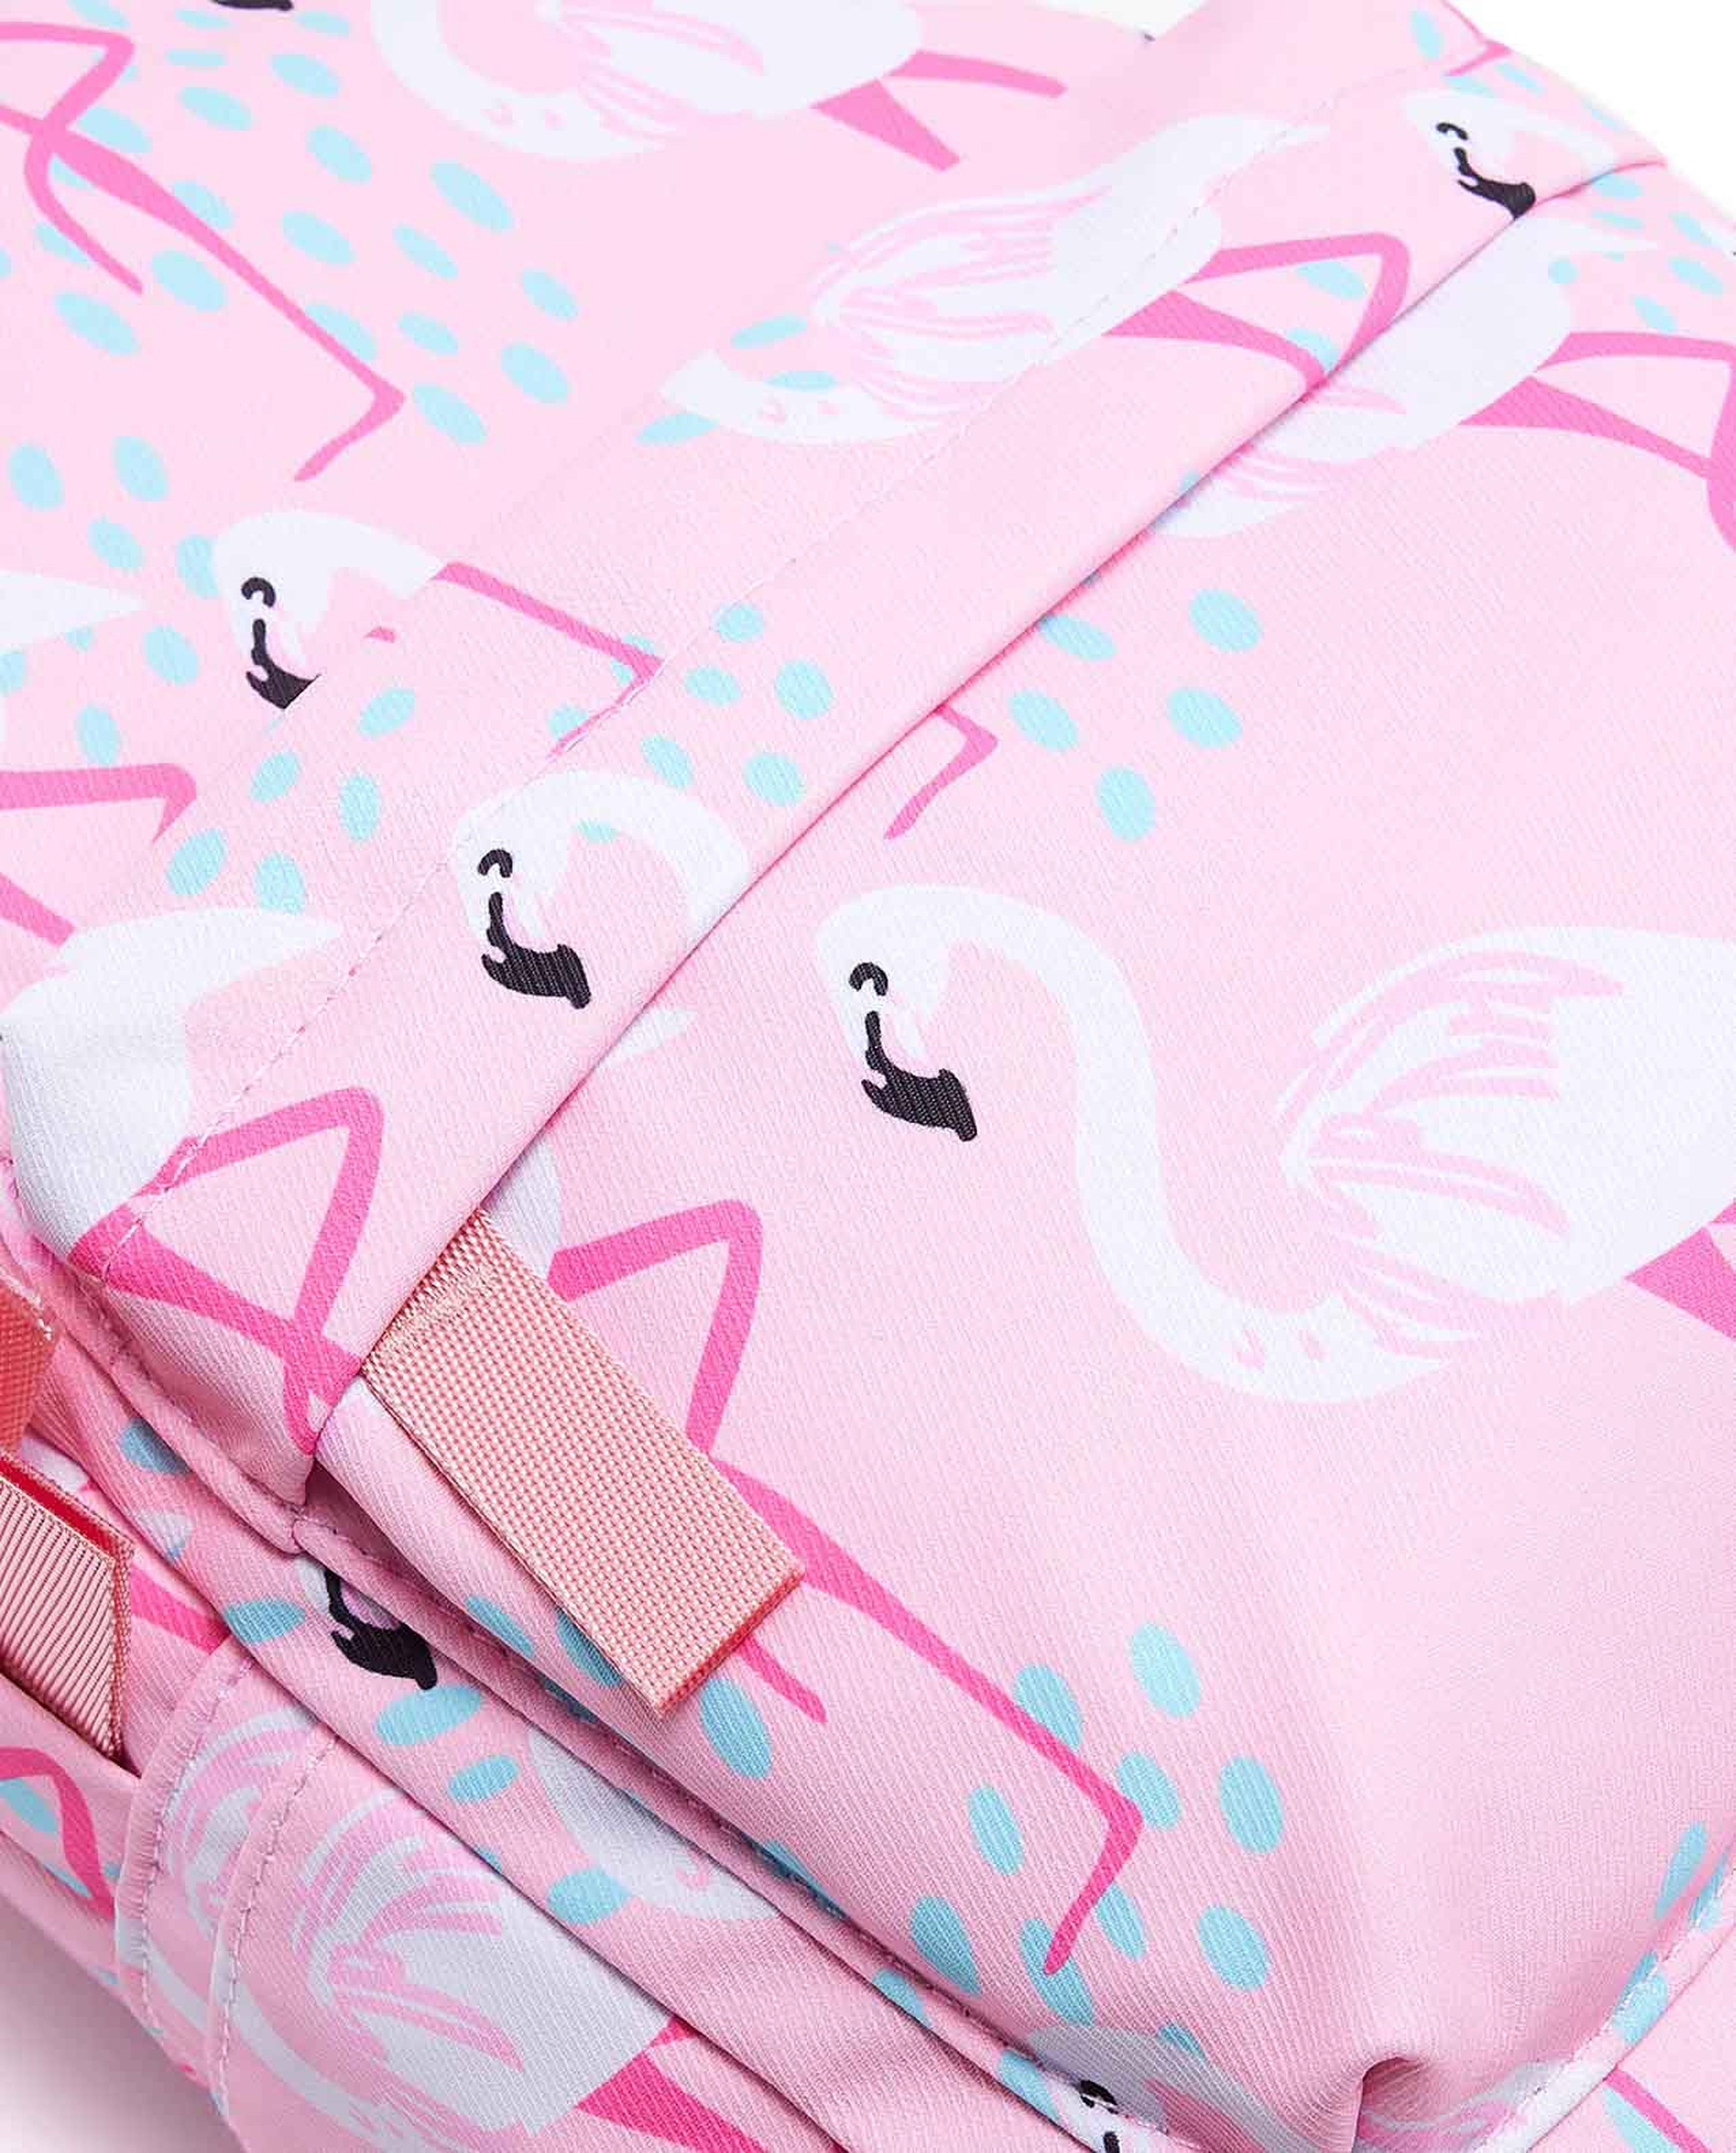 Flamingo Printed School Backpack